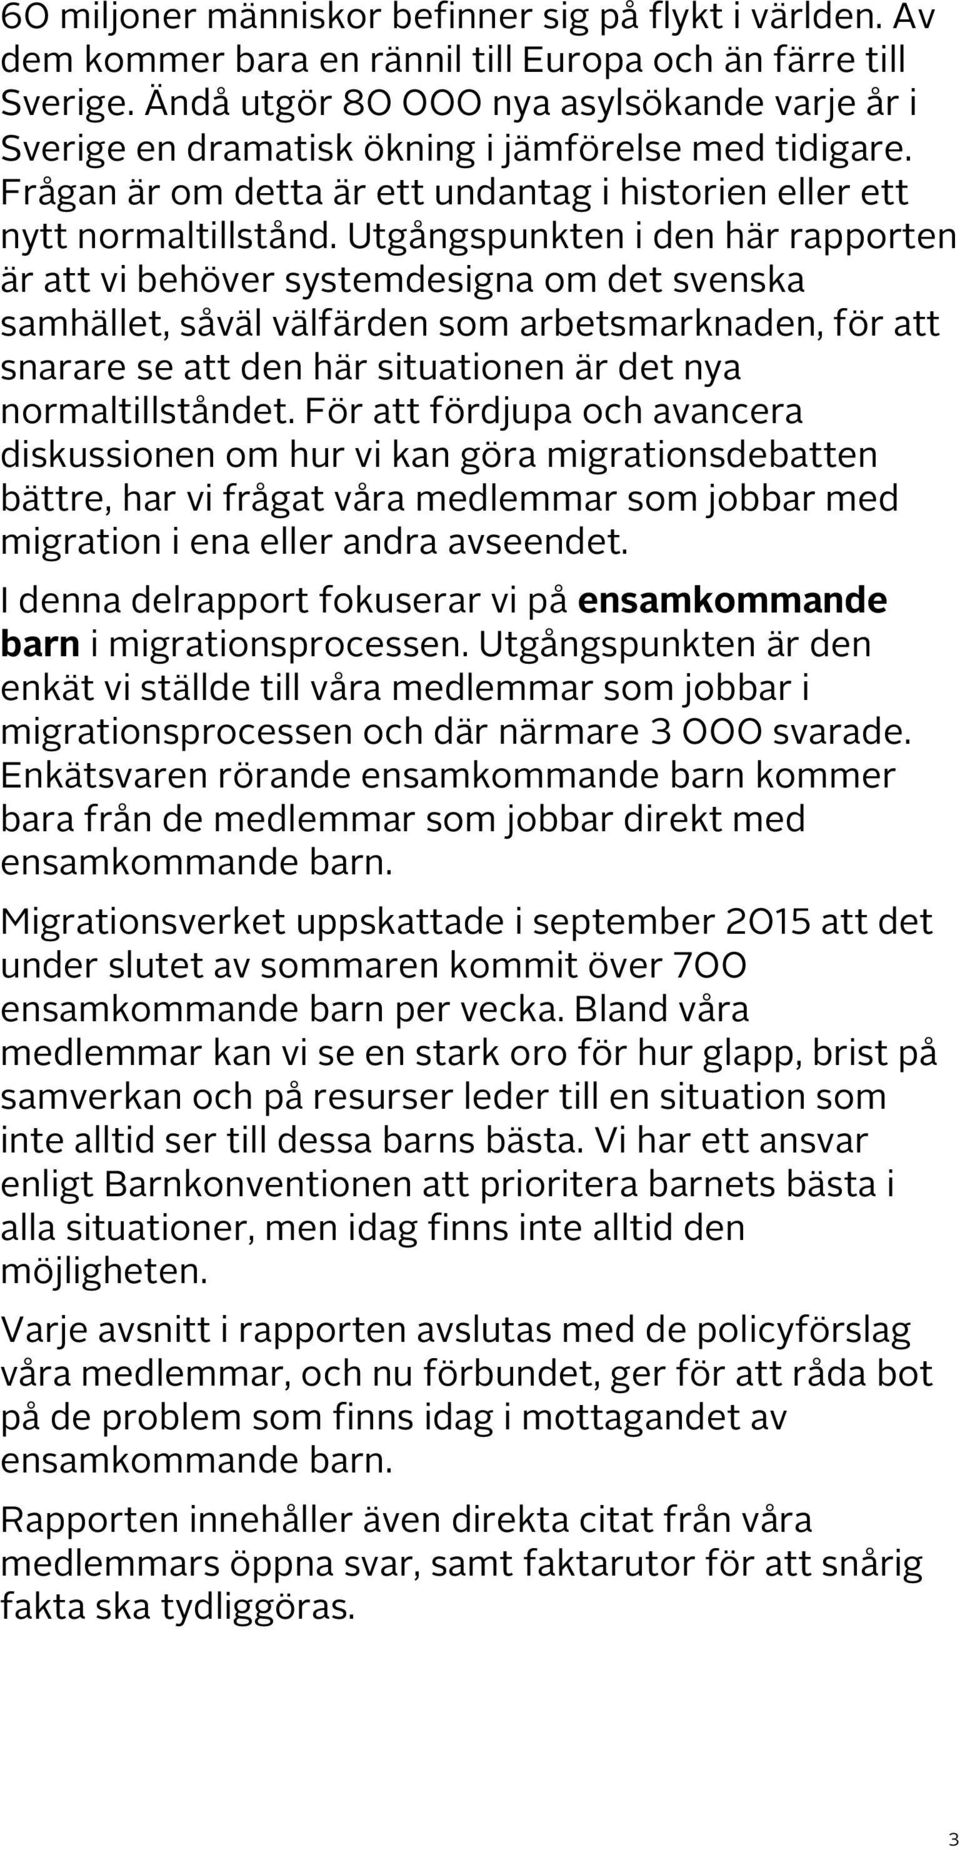 Utgångspunkten i den här rapporten är att vi behöver systemdesigna om det svenska samhället, såväl välfärden som arbetsmarknaden, för att snarare se att den här situationen är det nya